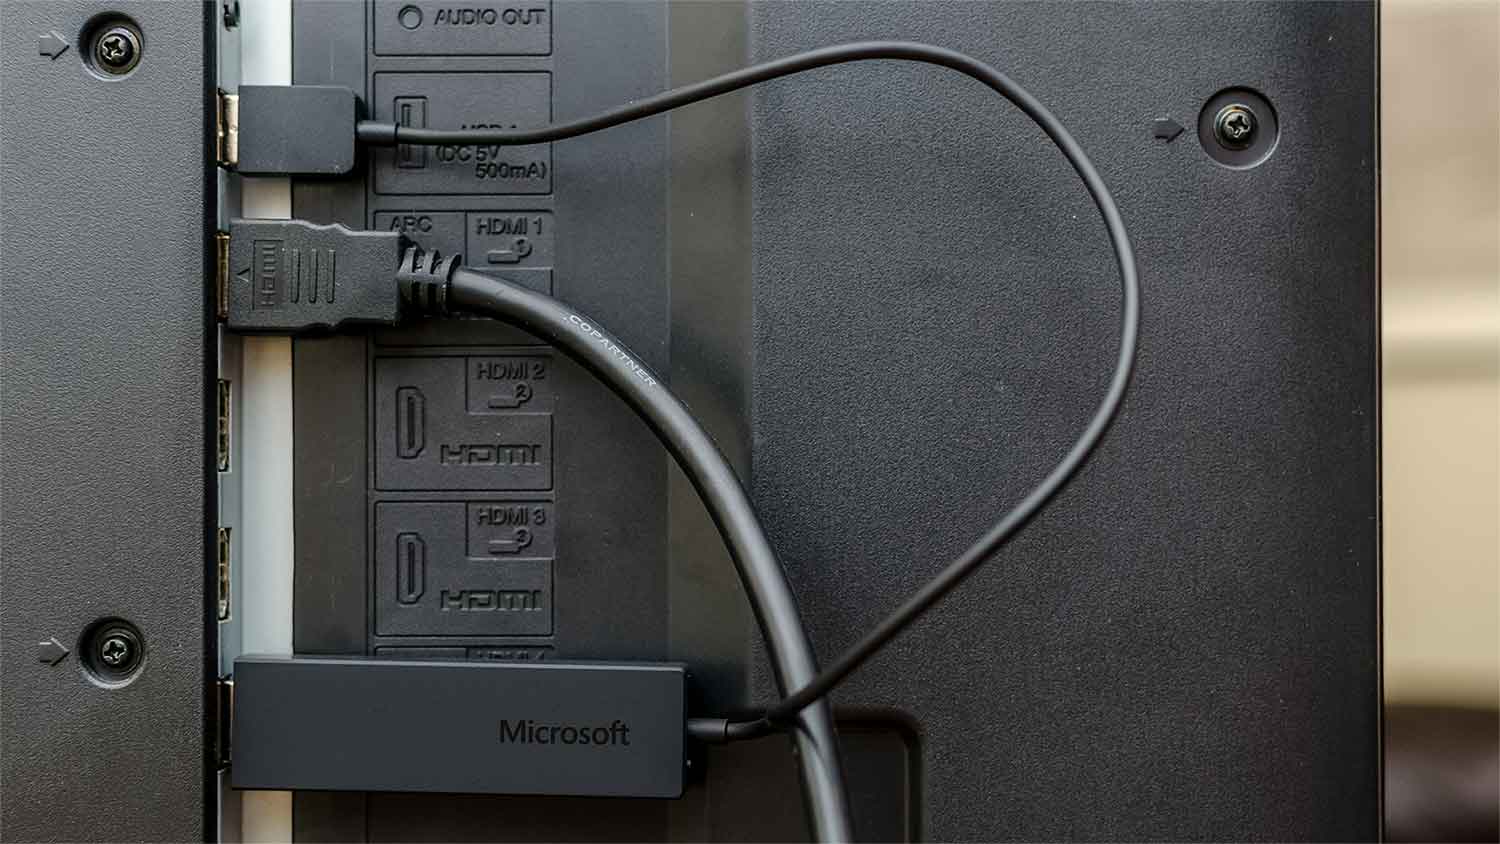 cara menghubungkan anycast ke laptop windows 7 dengan miracast microsoft